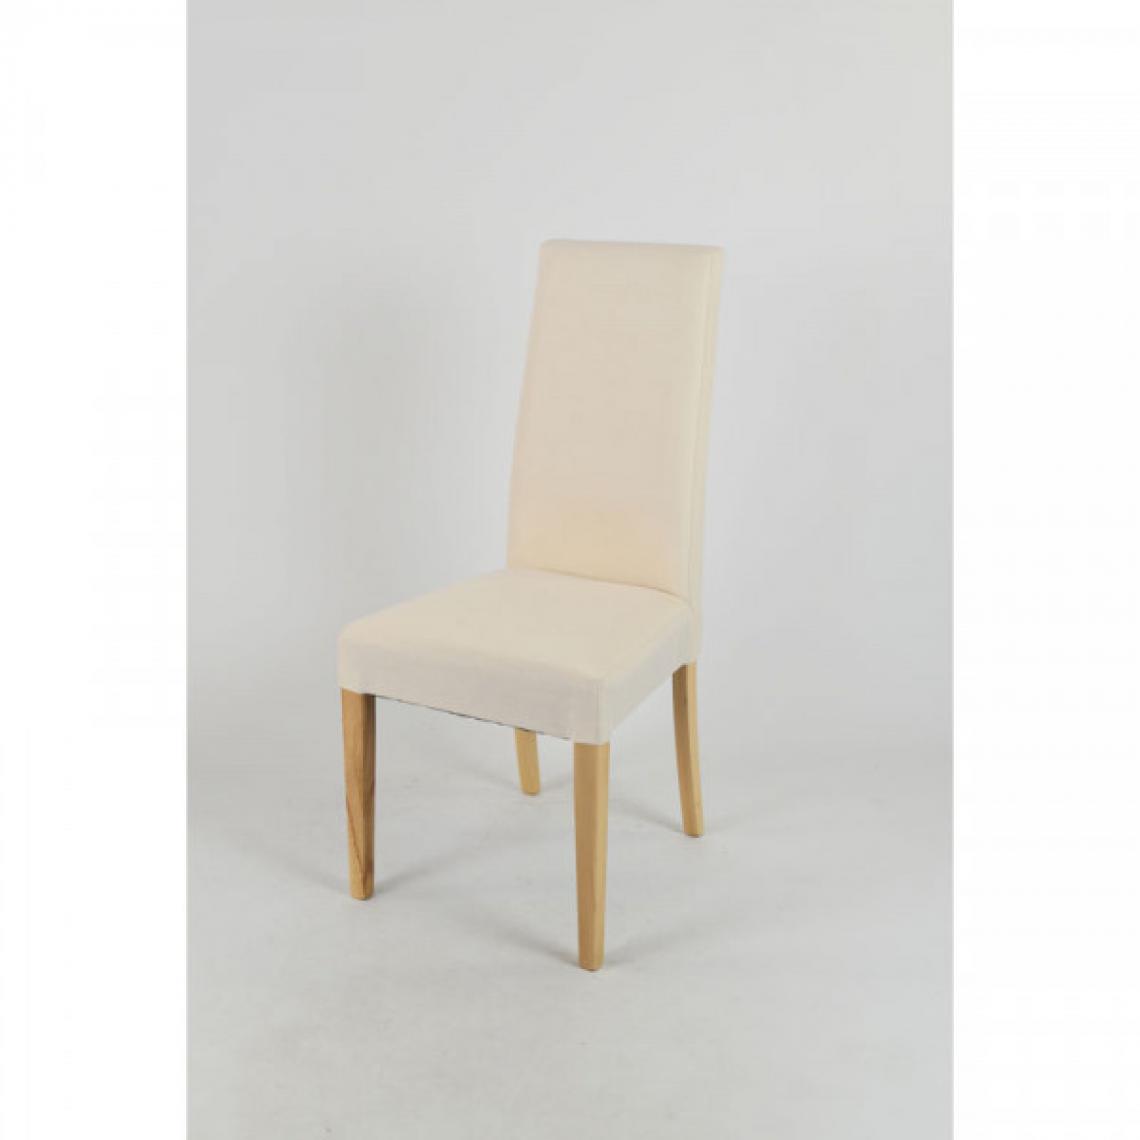 Dansmamaison - Duo de chaises tissu Ivoire - PISE - L 54 x l 46 x H 99 cm - Chaises